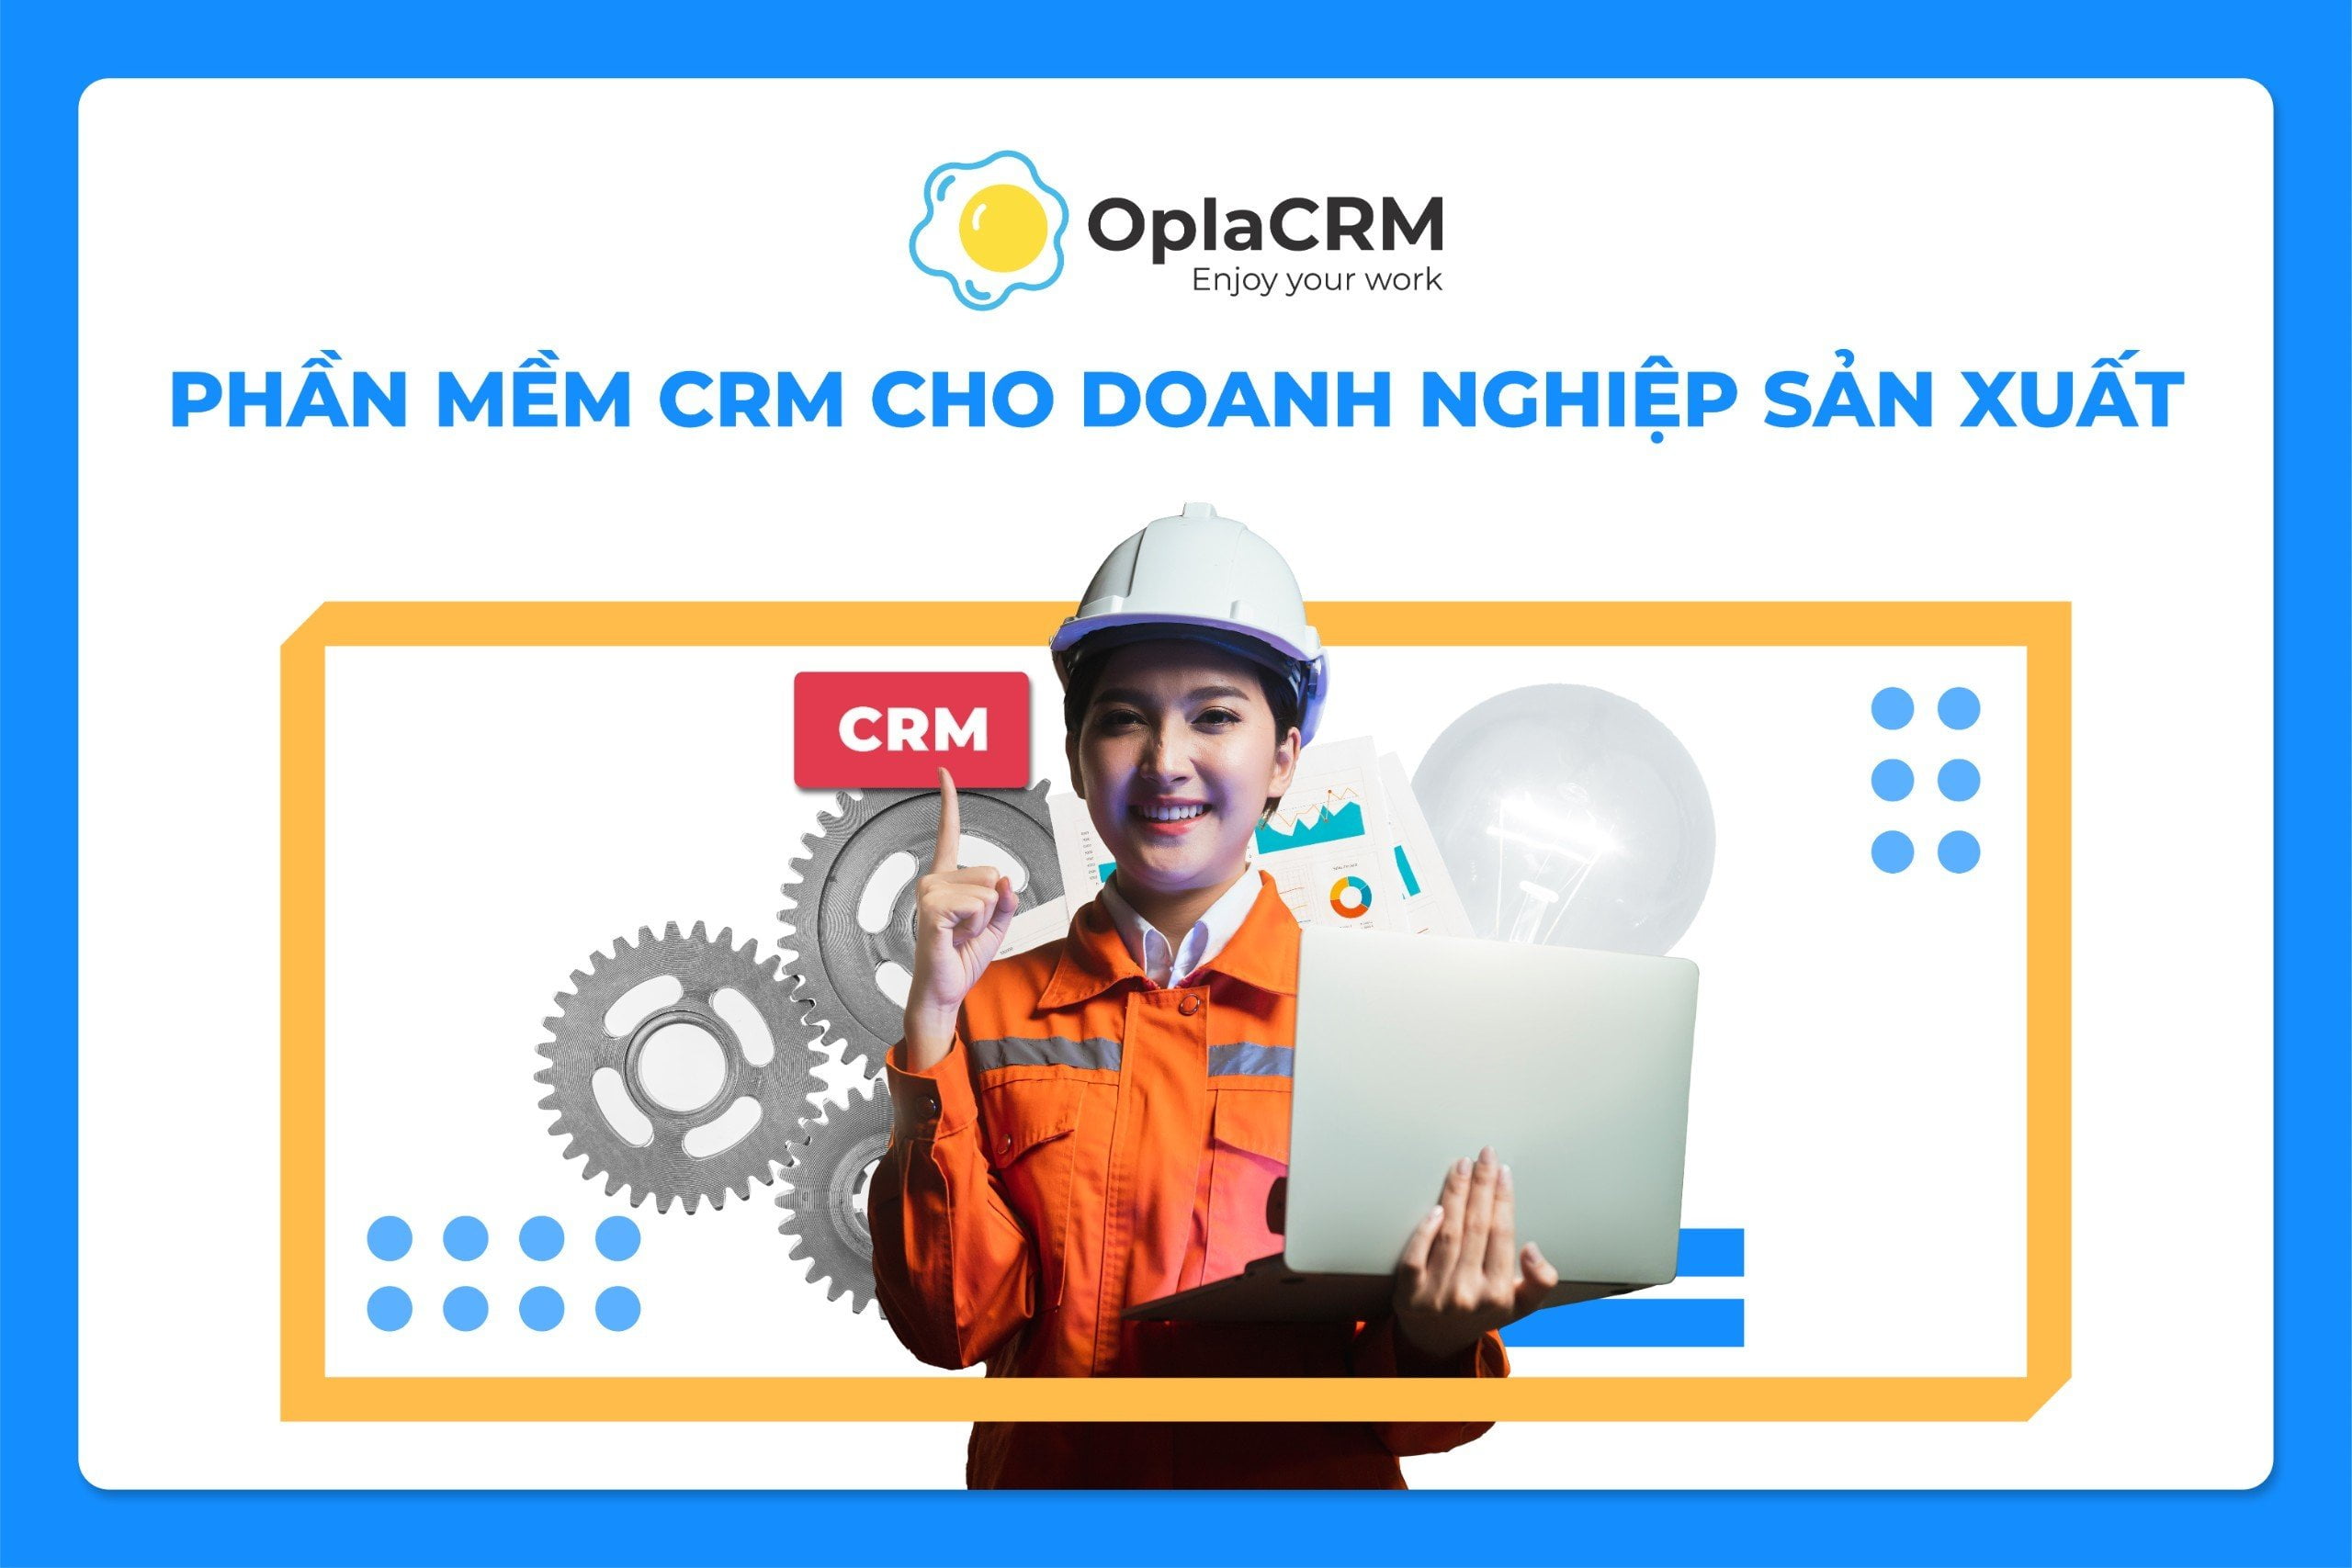 OplaCRM CRM cho doanh nghiệp sản xuất